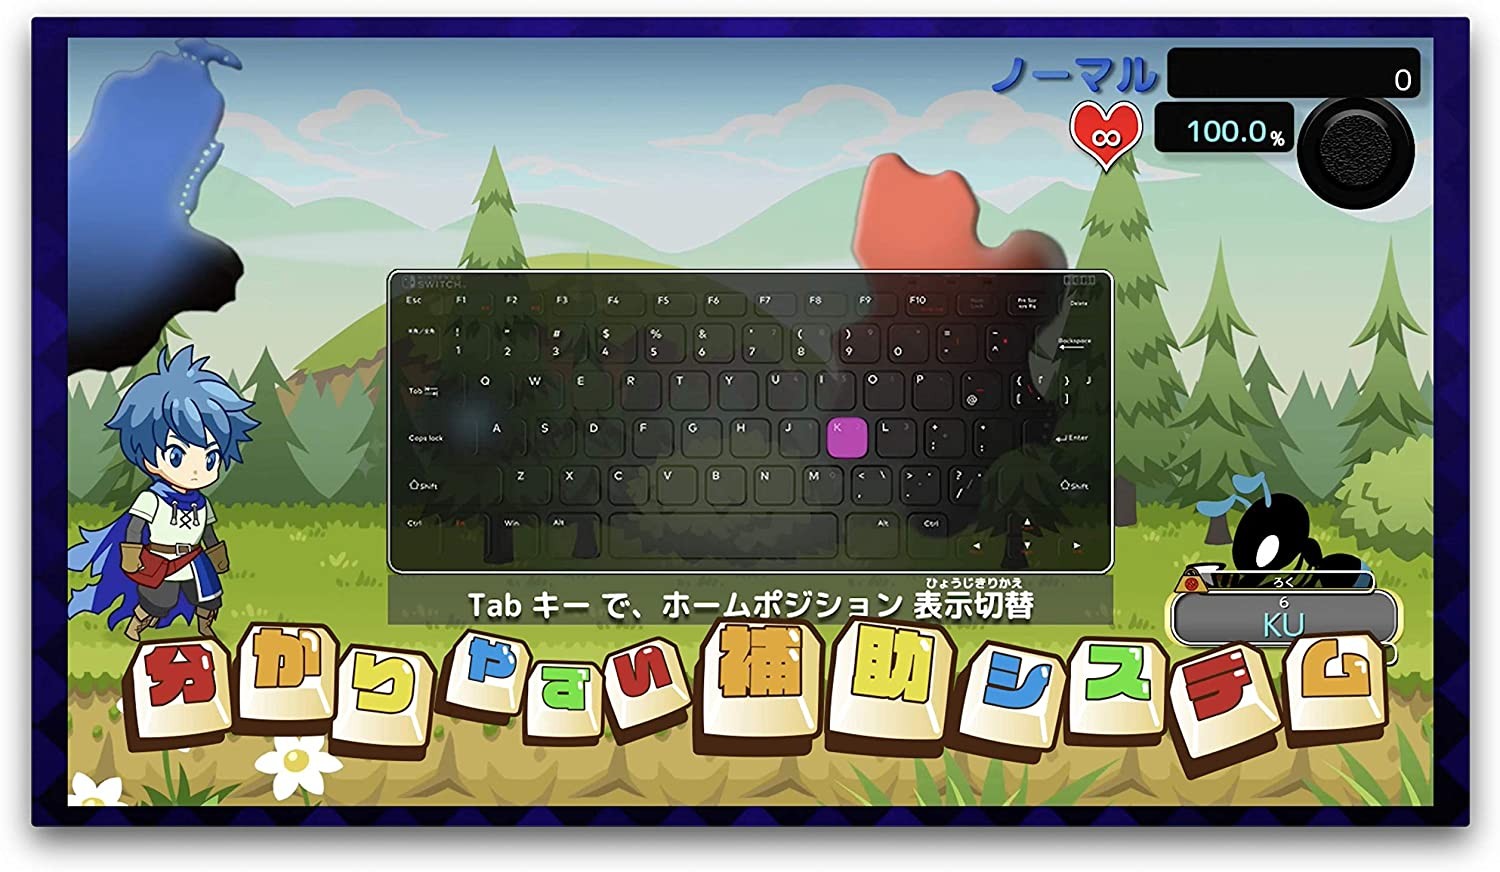 日本厂商为Switch推出专用打字练习游戏《打字冒险》